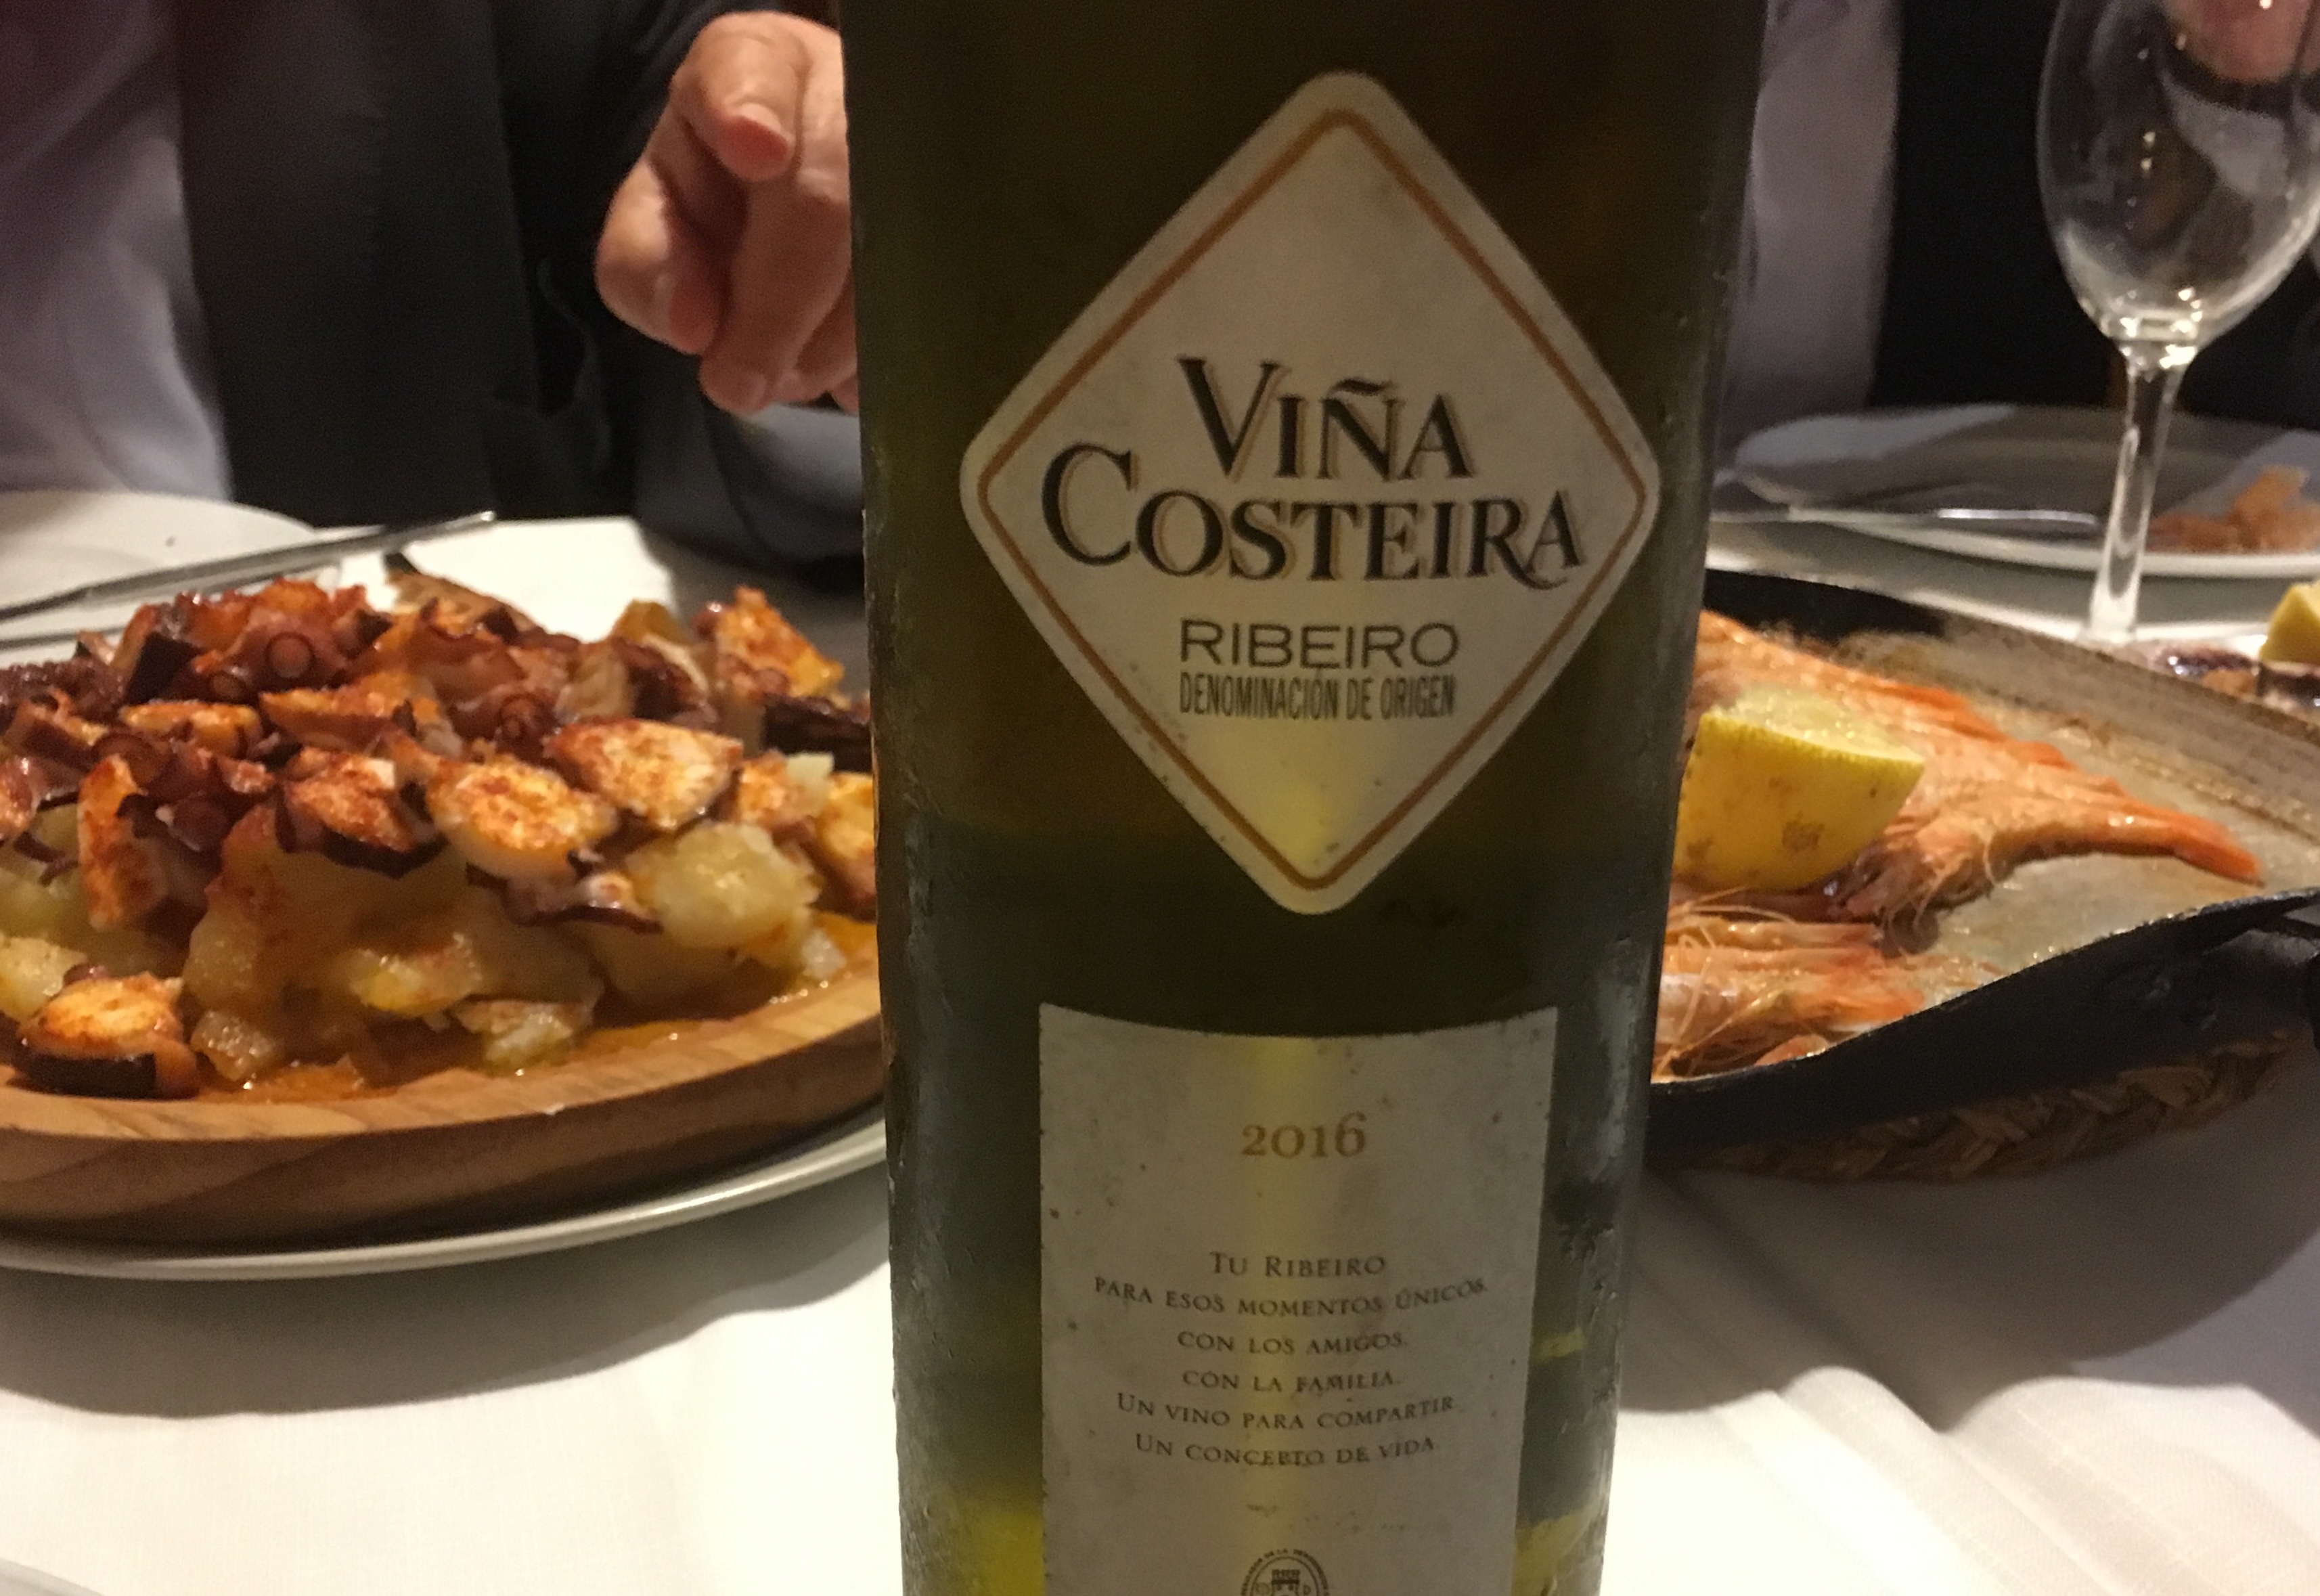 スペイン・ガリシア地方Ribeiro 最強のシーフードとコスパに優れた白ワイン